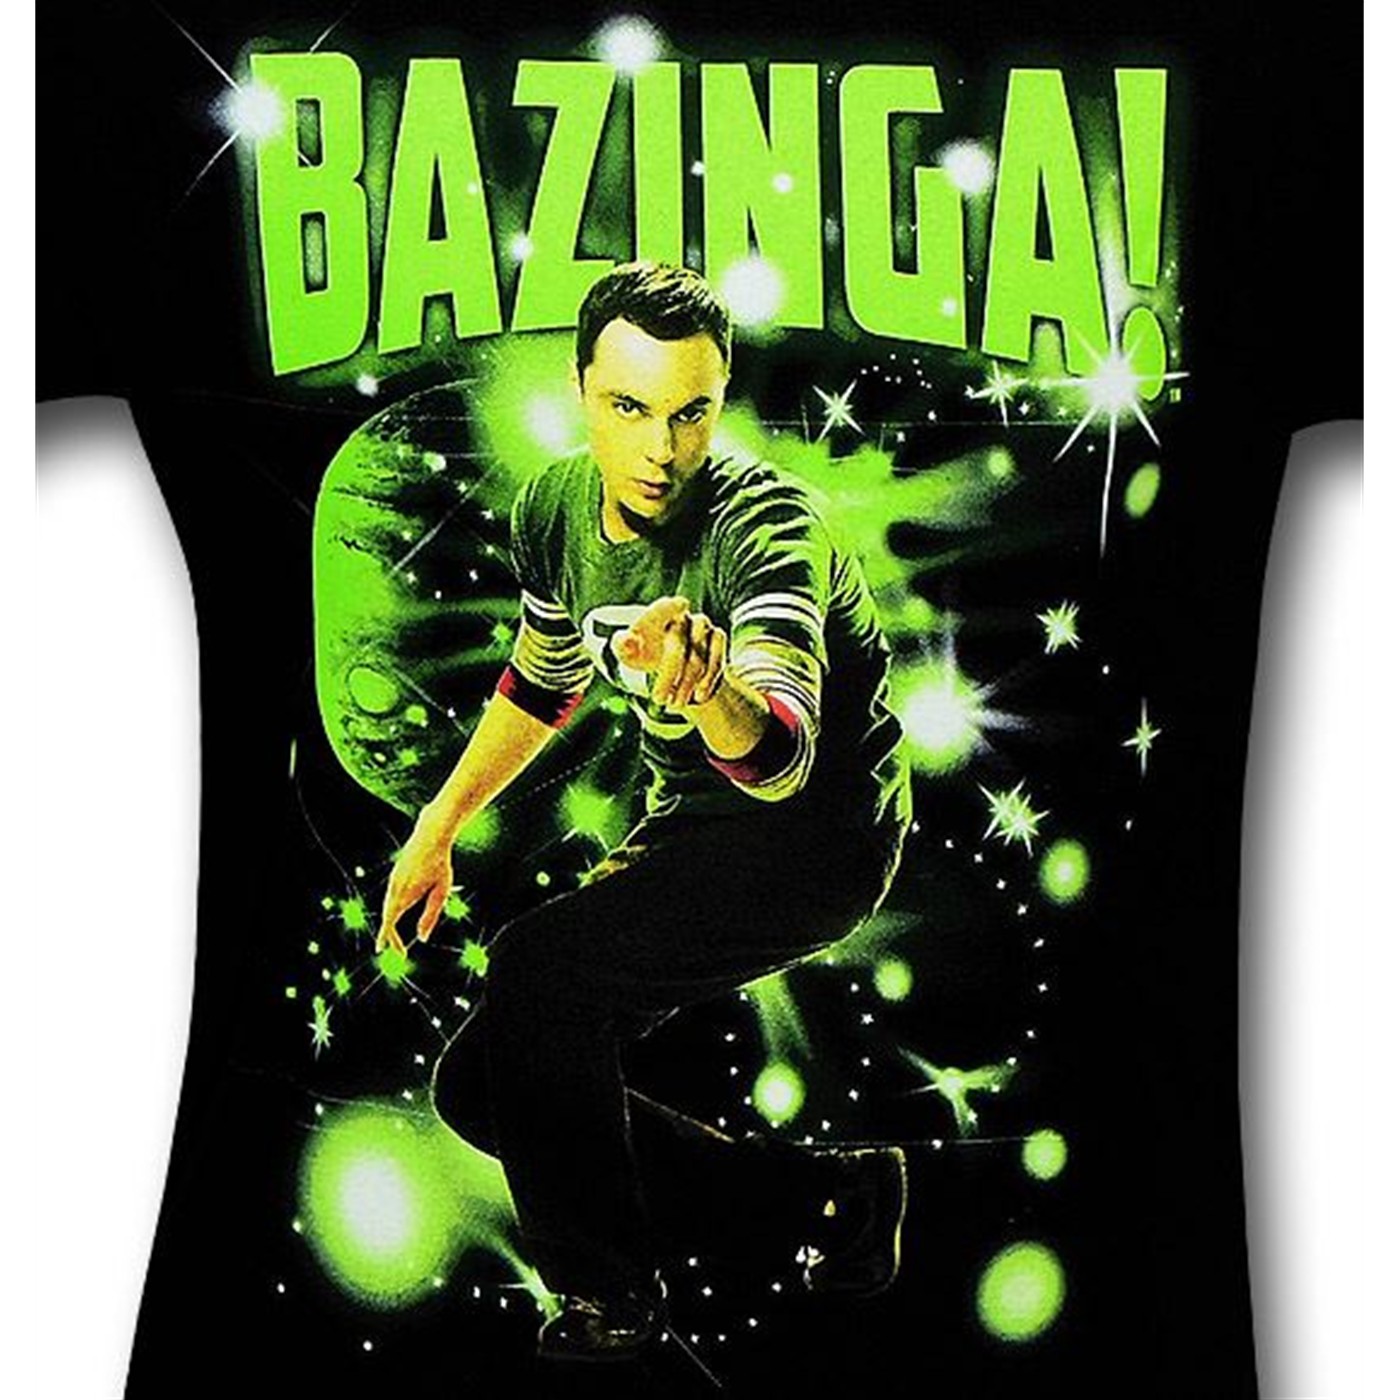 Big Bang Theory Sheldon Stars Bazinga T-Shirt